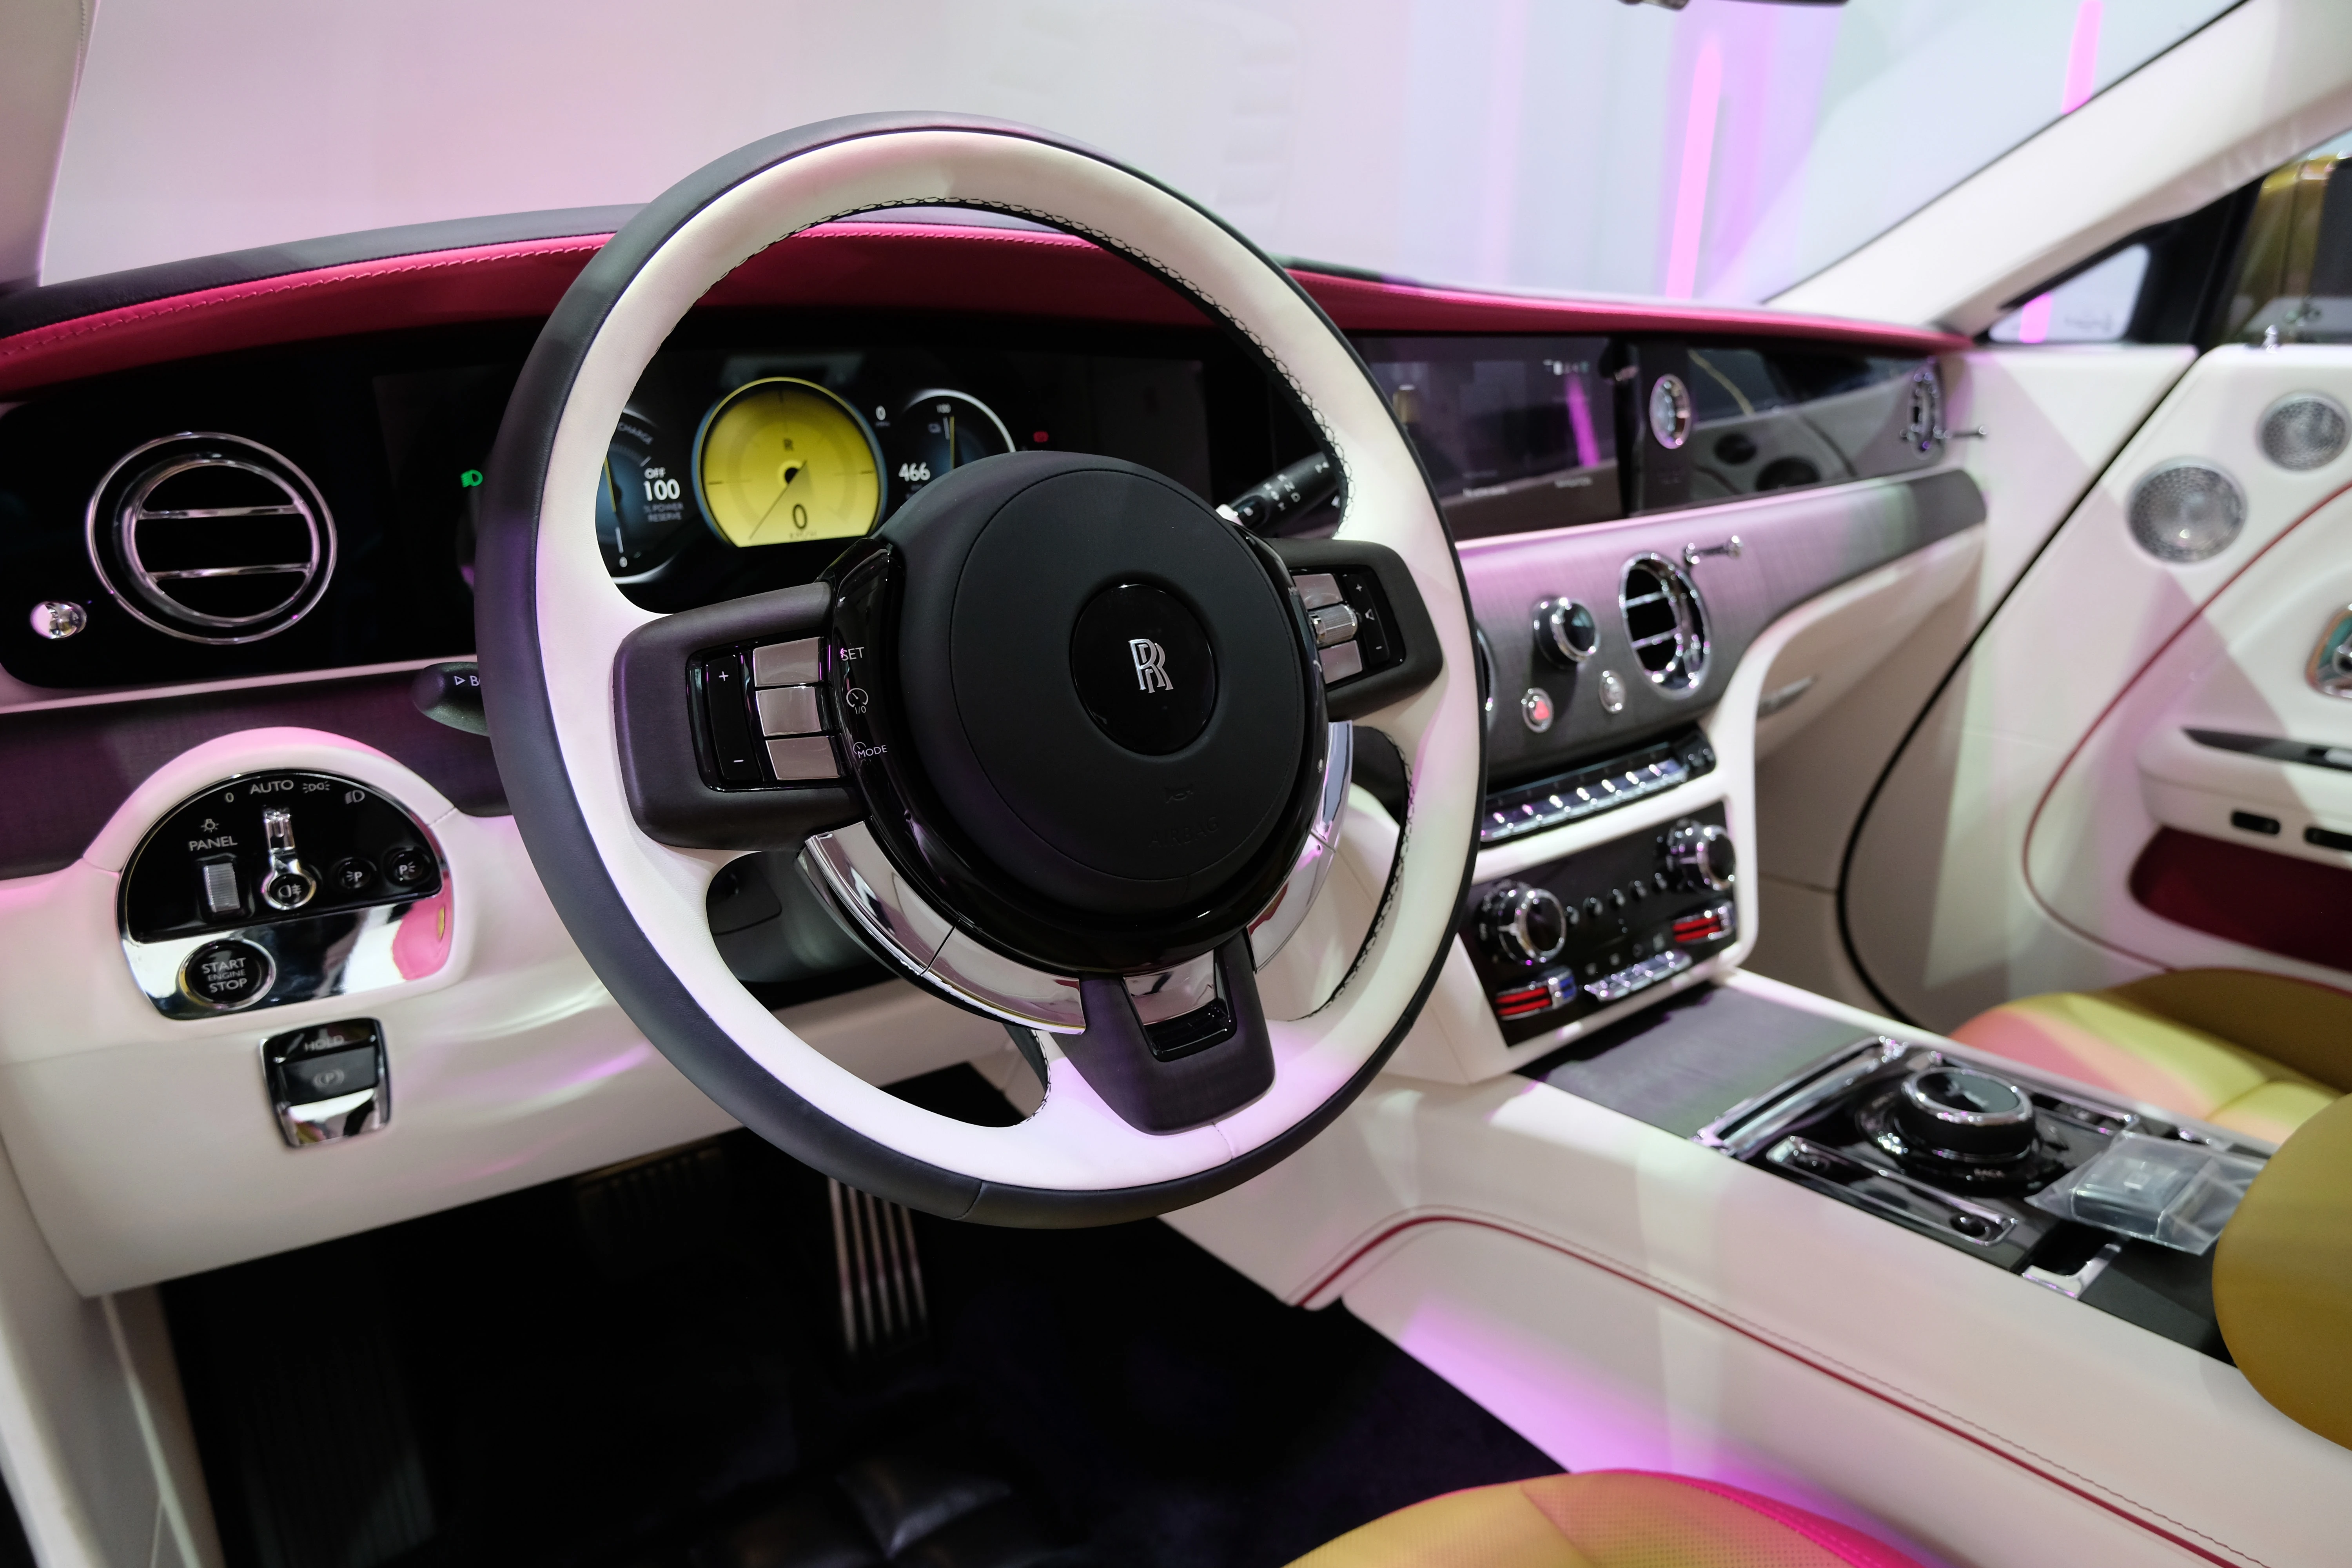 Khoang lái của Spectre vẫn mang phong cách quen thuộc của những chiếc xe Rolls-Royce